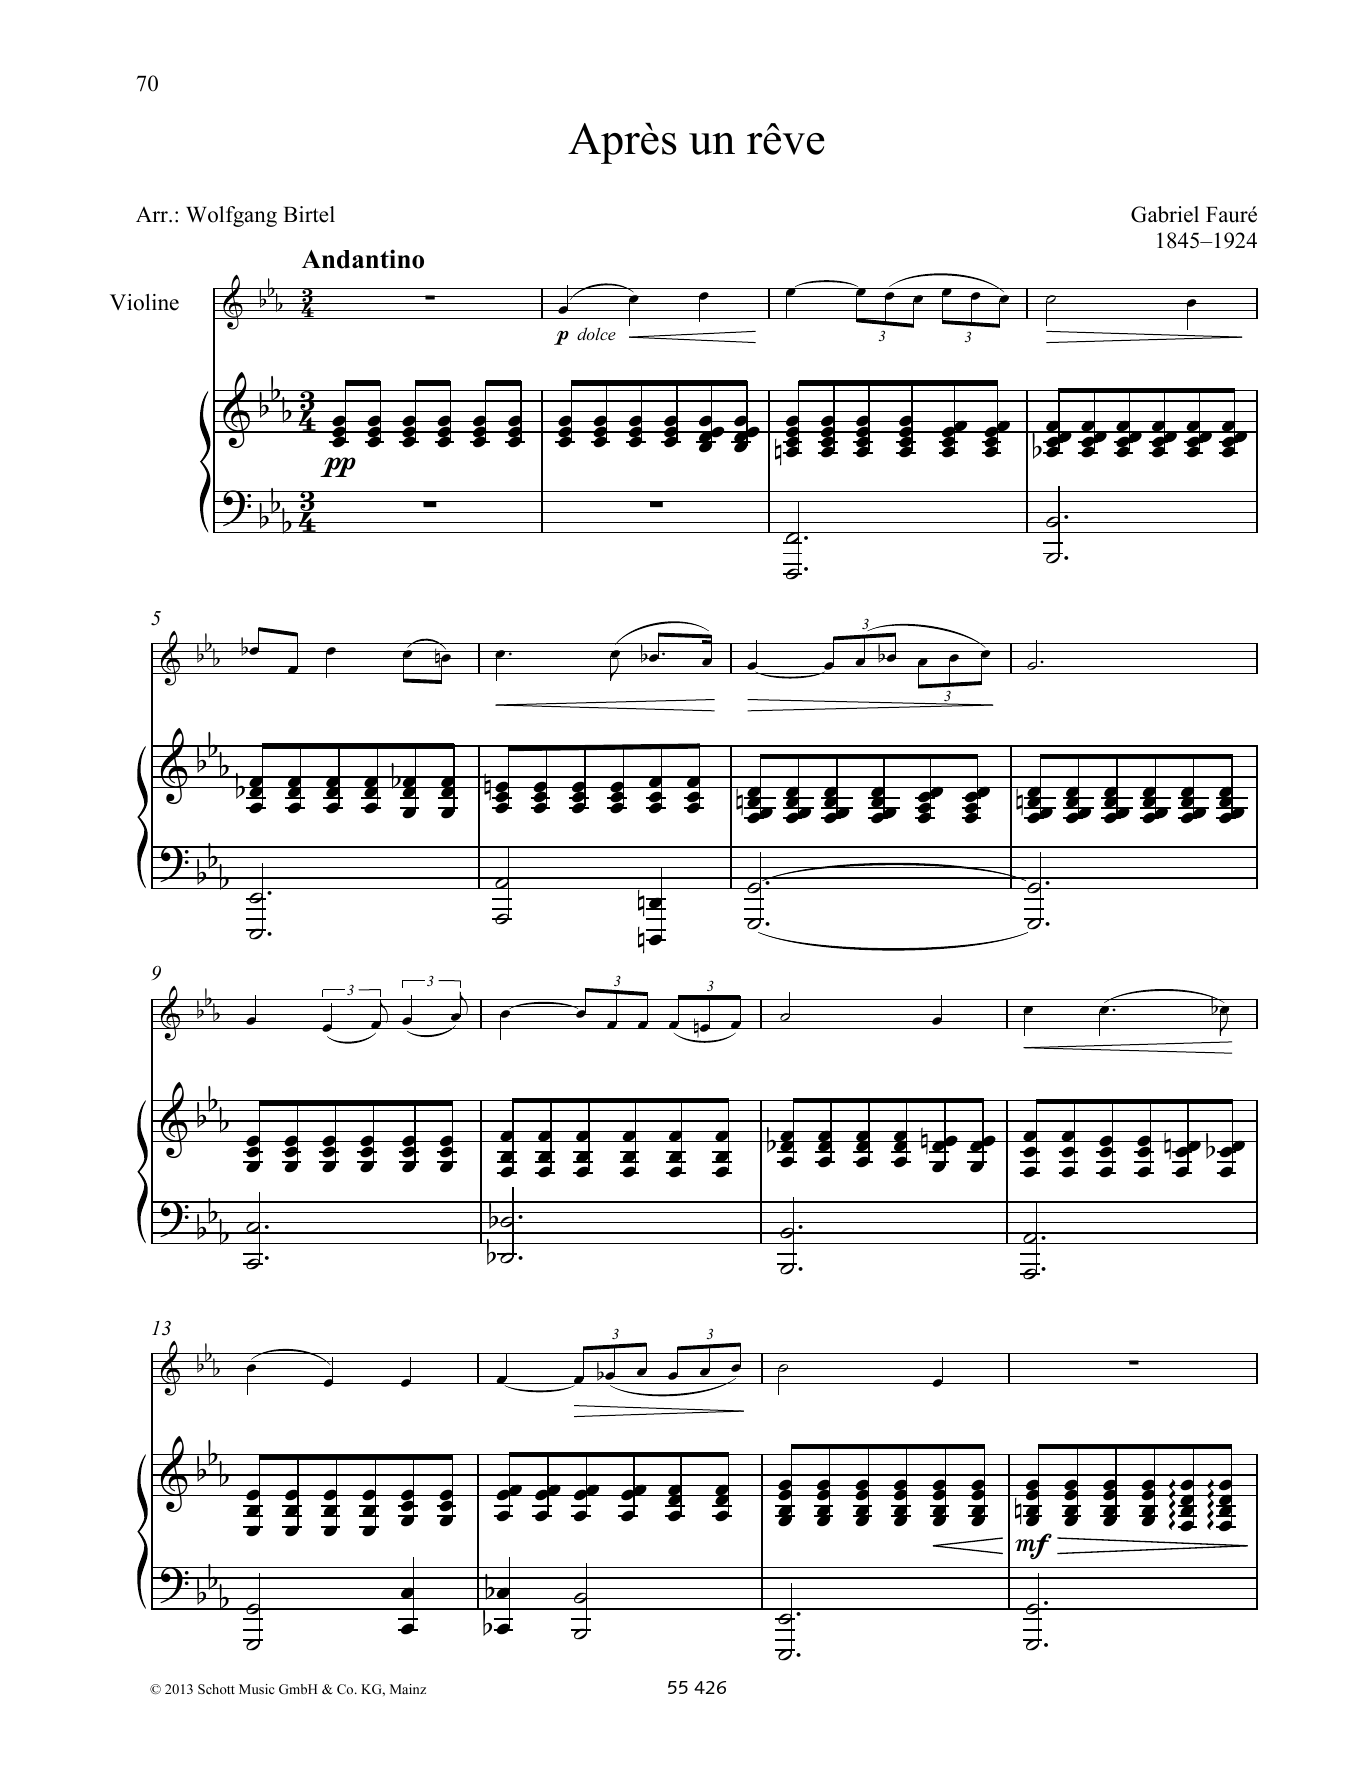 Gabriel Fauré Après un rêve Sheet Music Notes & Chords for Woodwind Solo - Download or Print PDF